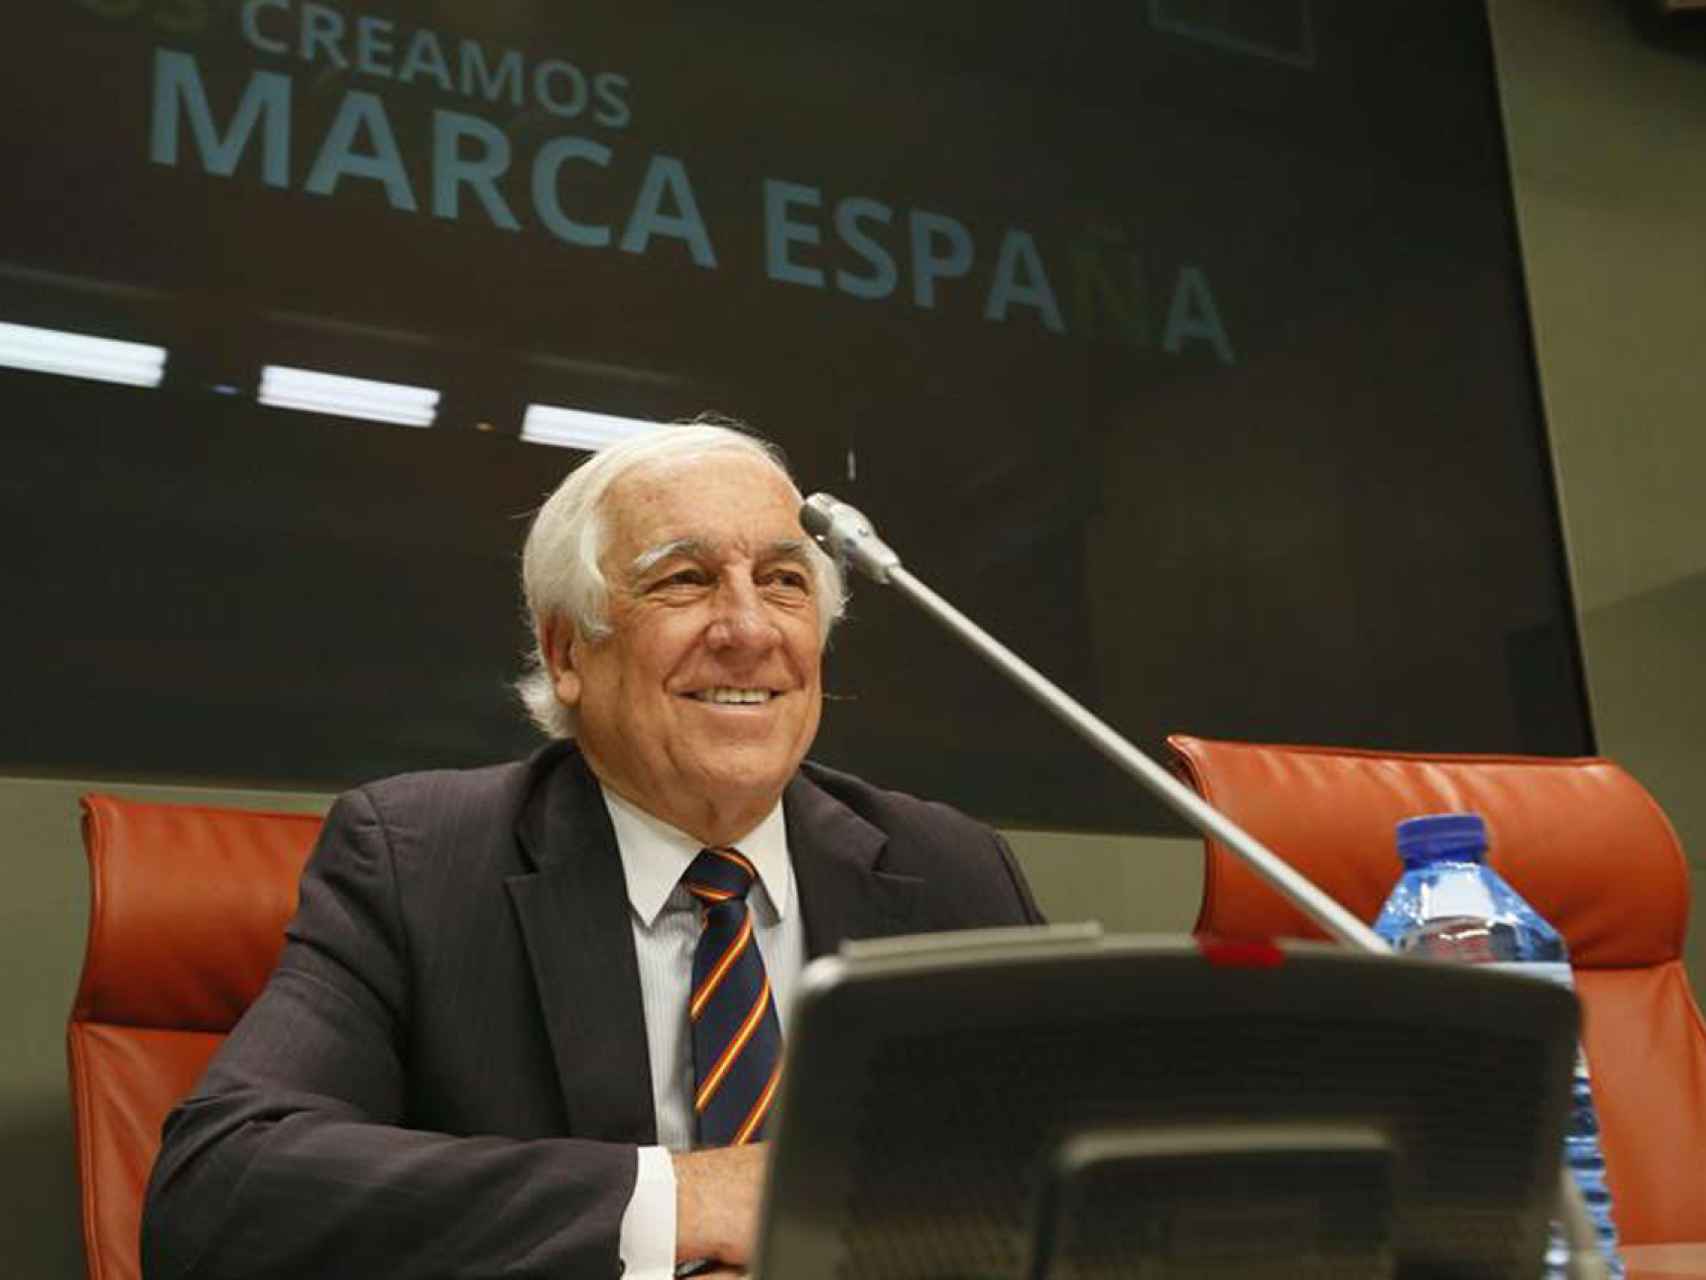 El Alto Comisionado de la Marca España, Carlos Espinosa de los Monteros.